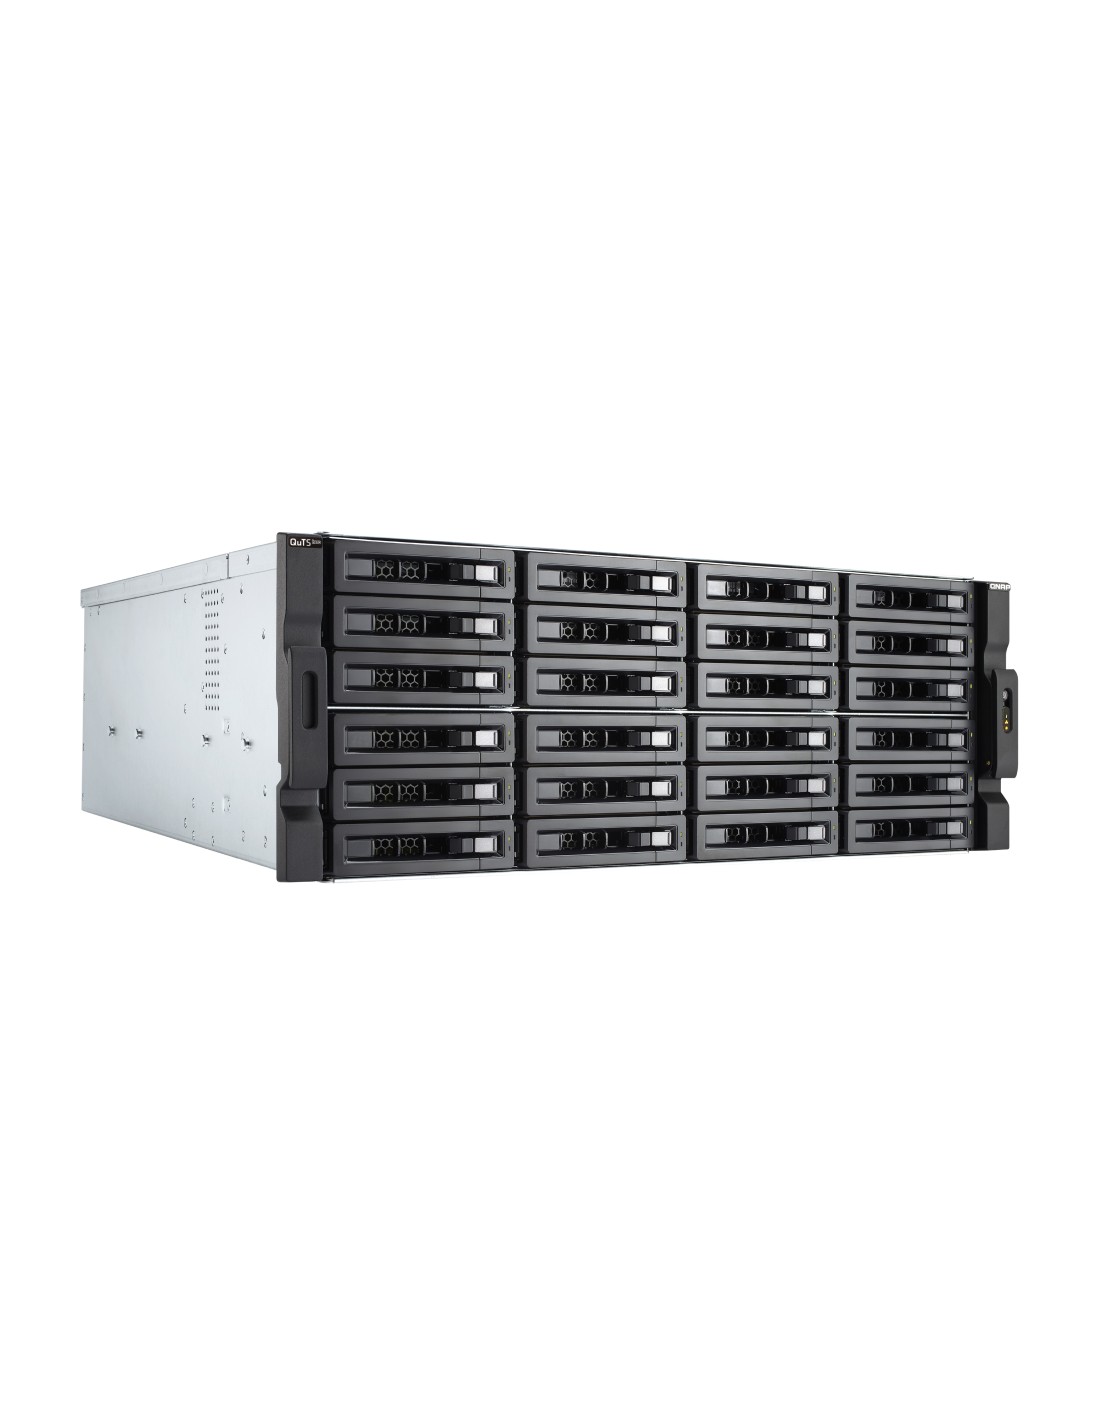 TS-h2477XU-RP-3700X-32G NAS rack 24 bahías - AMD Ryzen 7 3700X 8 núcleos 4.4 GHz, 32GB DDR4 (max 128 GB)